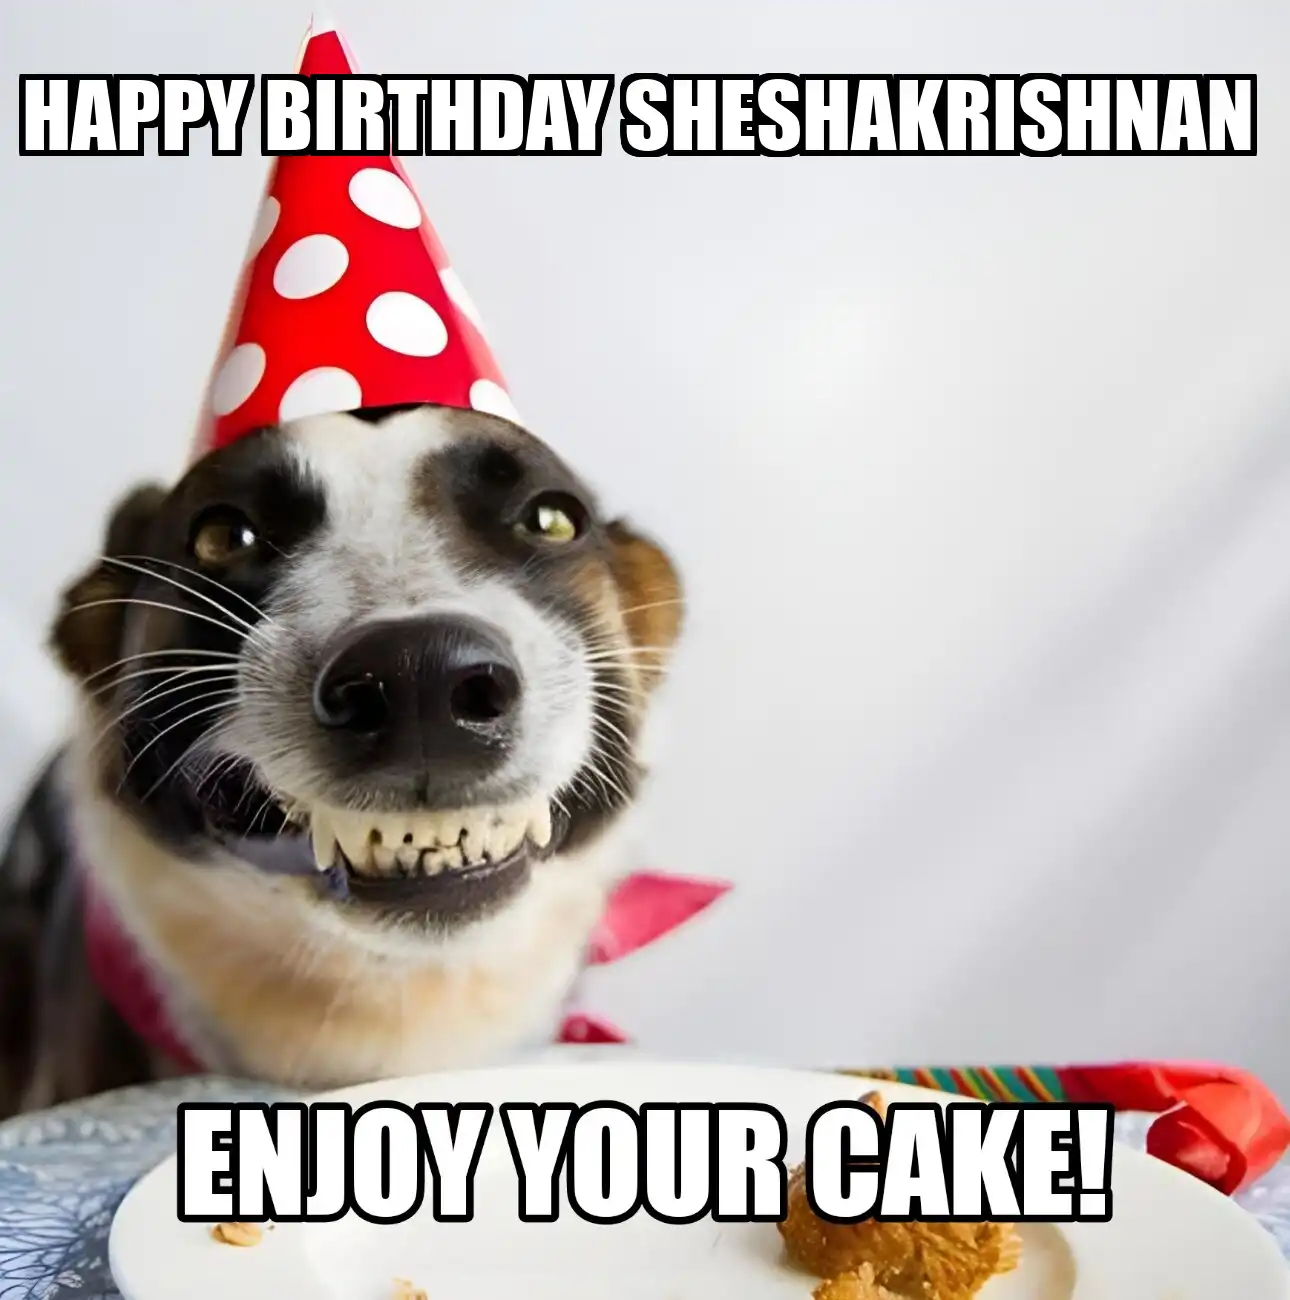 Happy Birthday Sheshakrishnan Enjoy Your Cake Dog Meme